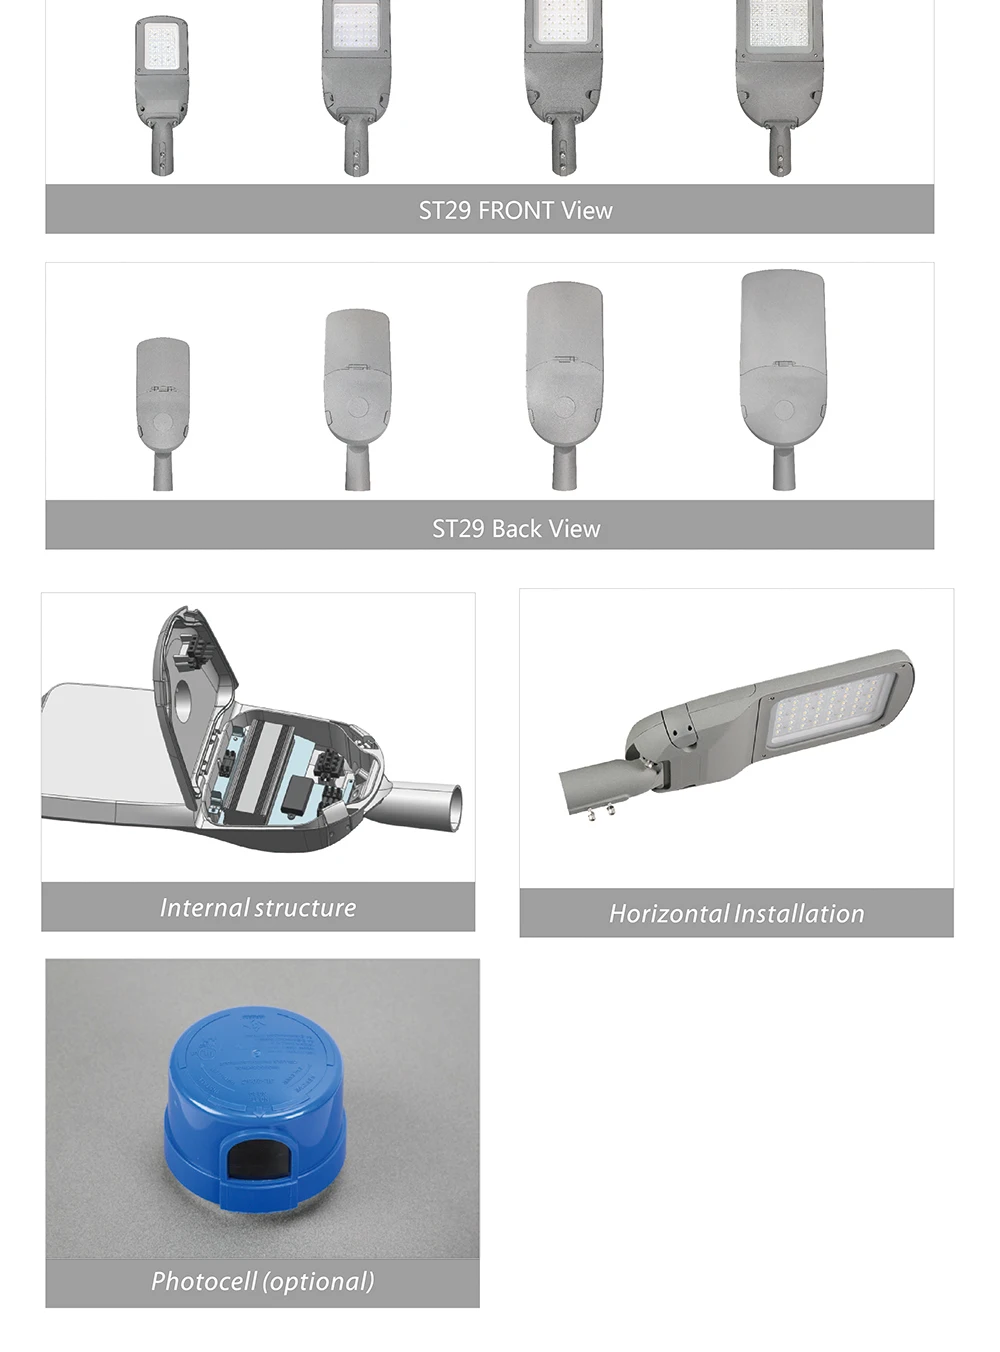 Smart city lighting led sensor street light 100 watt led road light lamp ip66 with Best Price